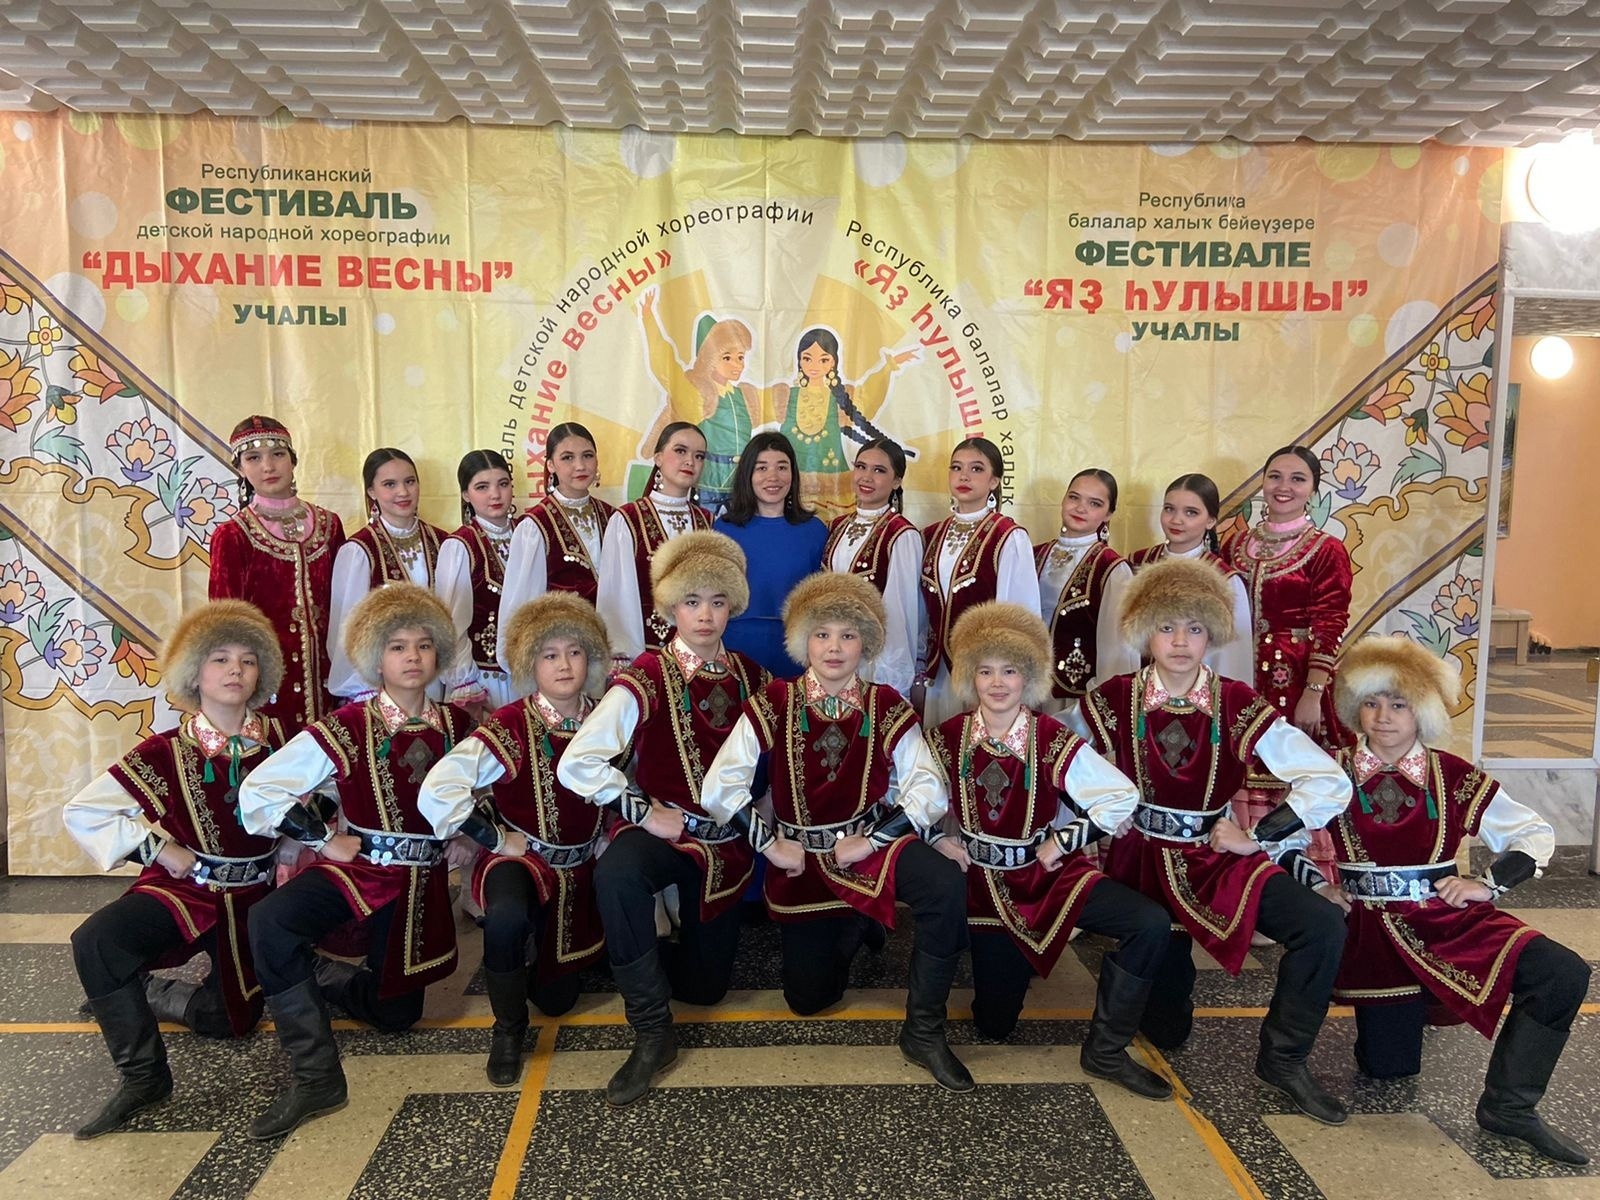 Хайбуллинские танцоры стали призерами VI Республиканского фестиваля детской народной хореографии «Дыхание весны»